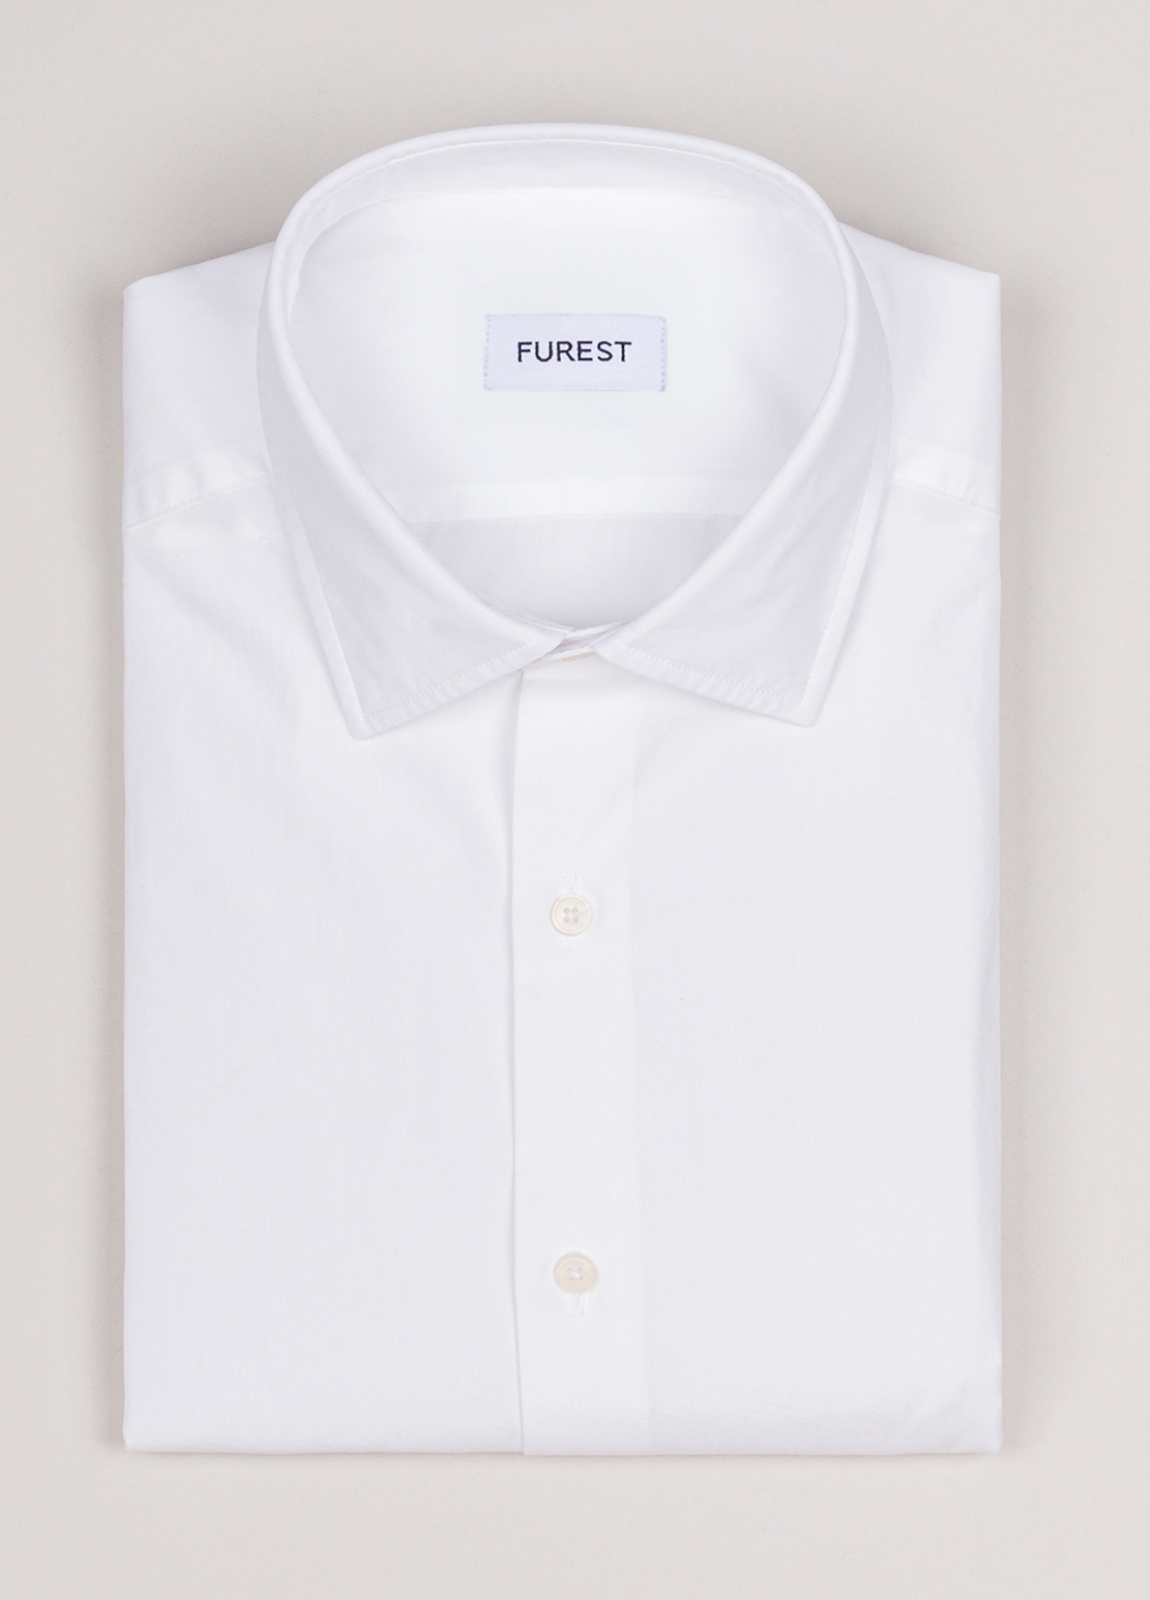 Camisa sport FUREST COLECCION popelín blanco - Ítem1